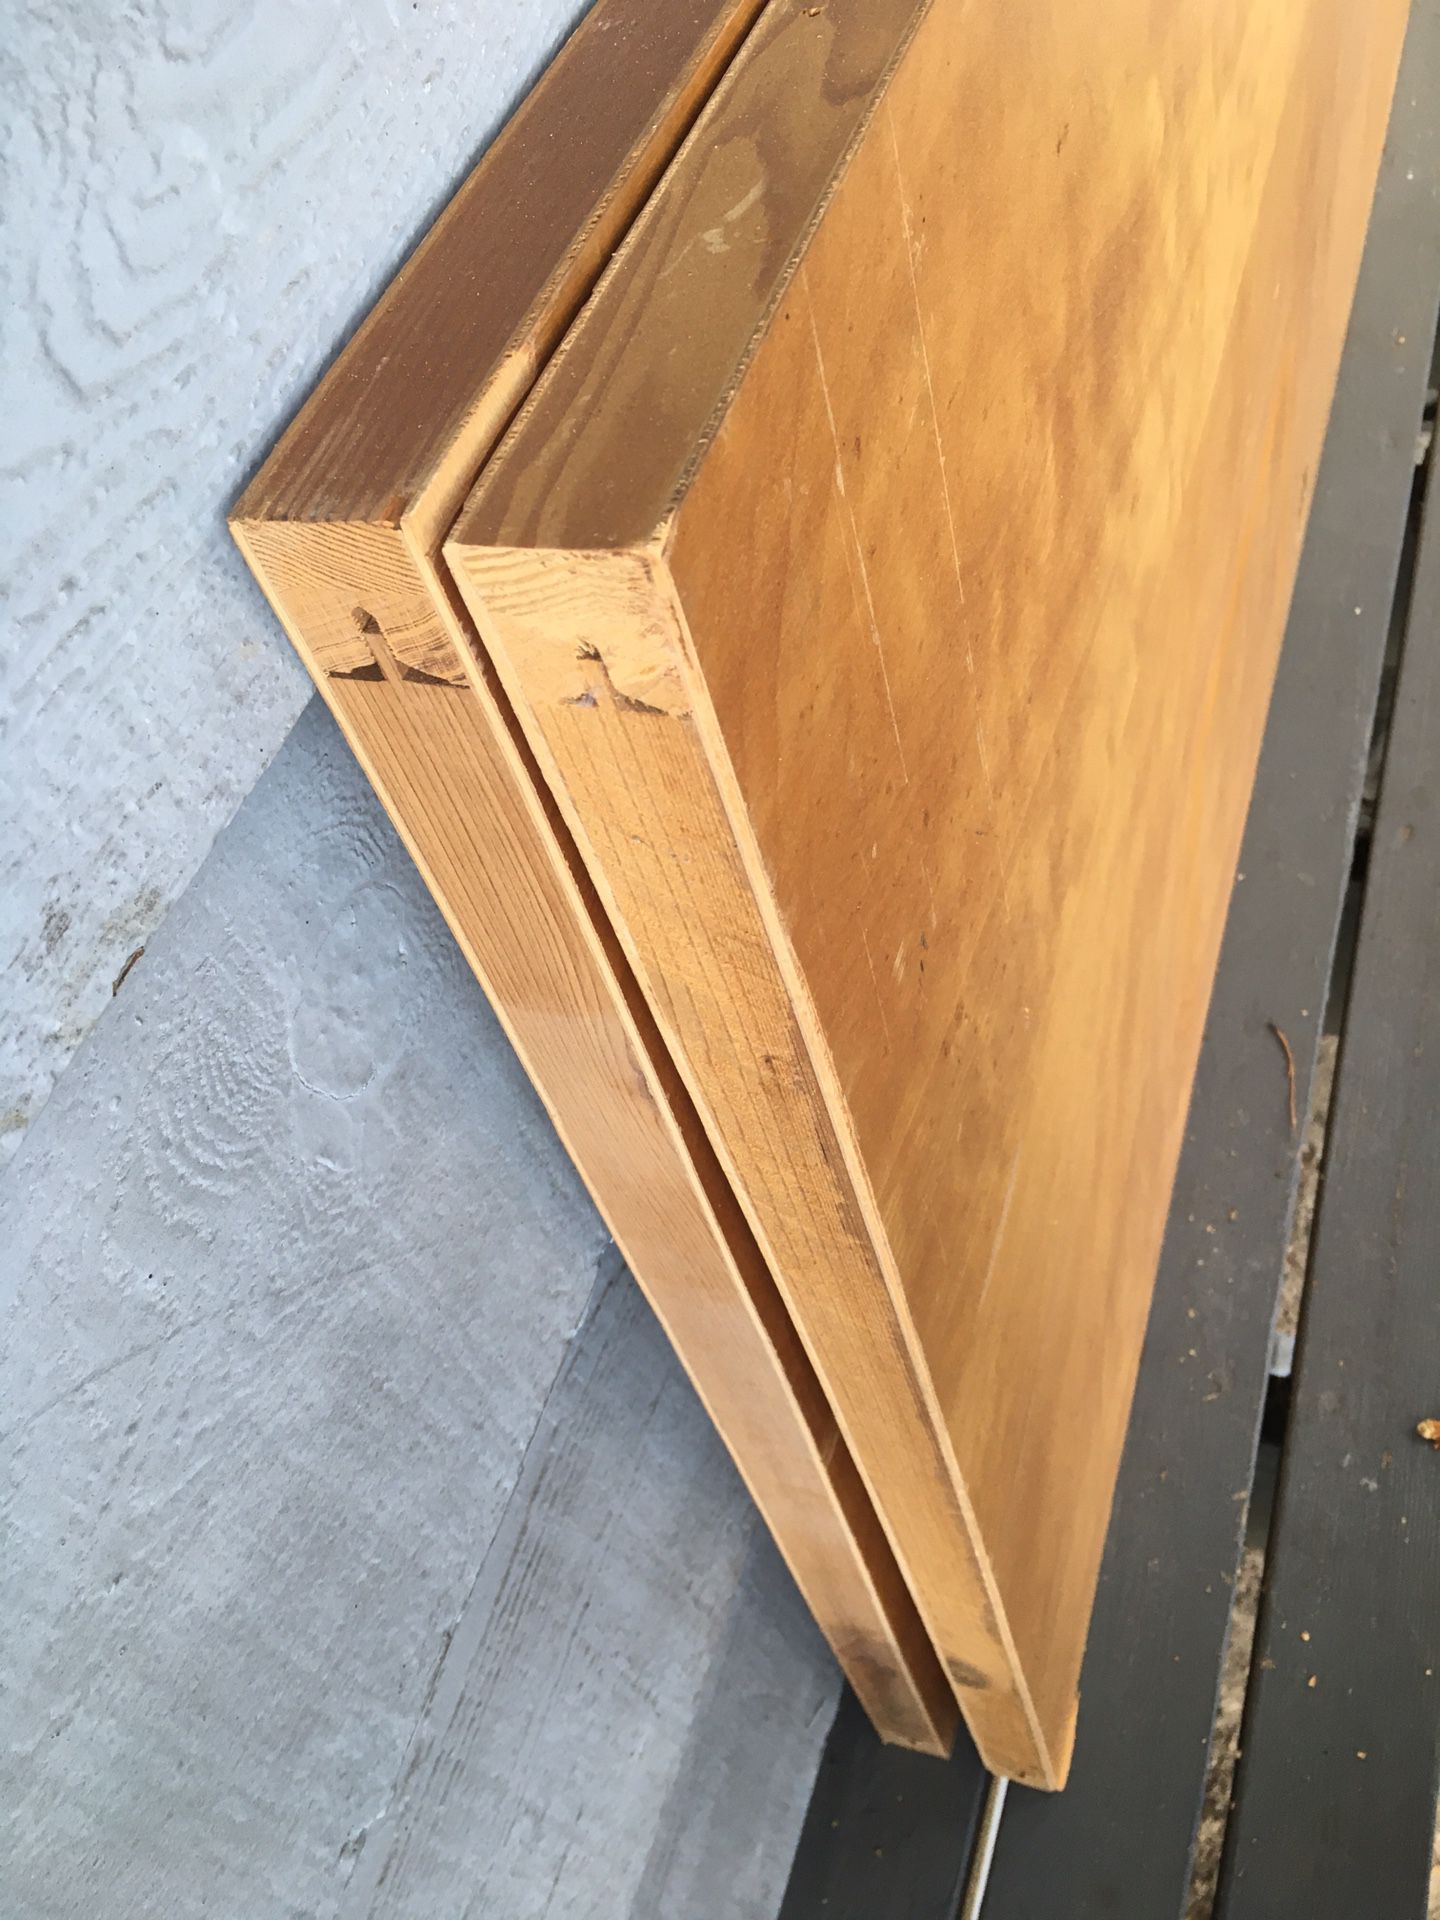 Free wood veneer hollow door panels.